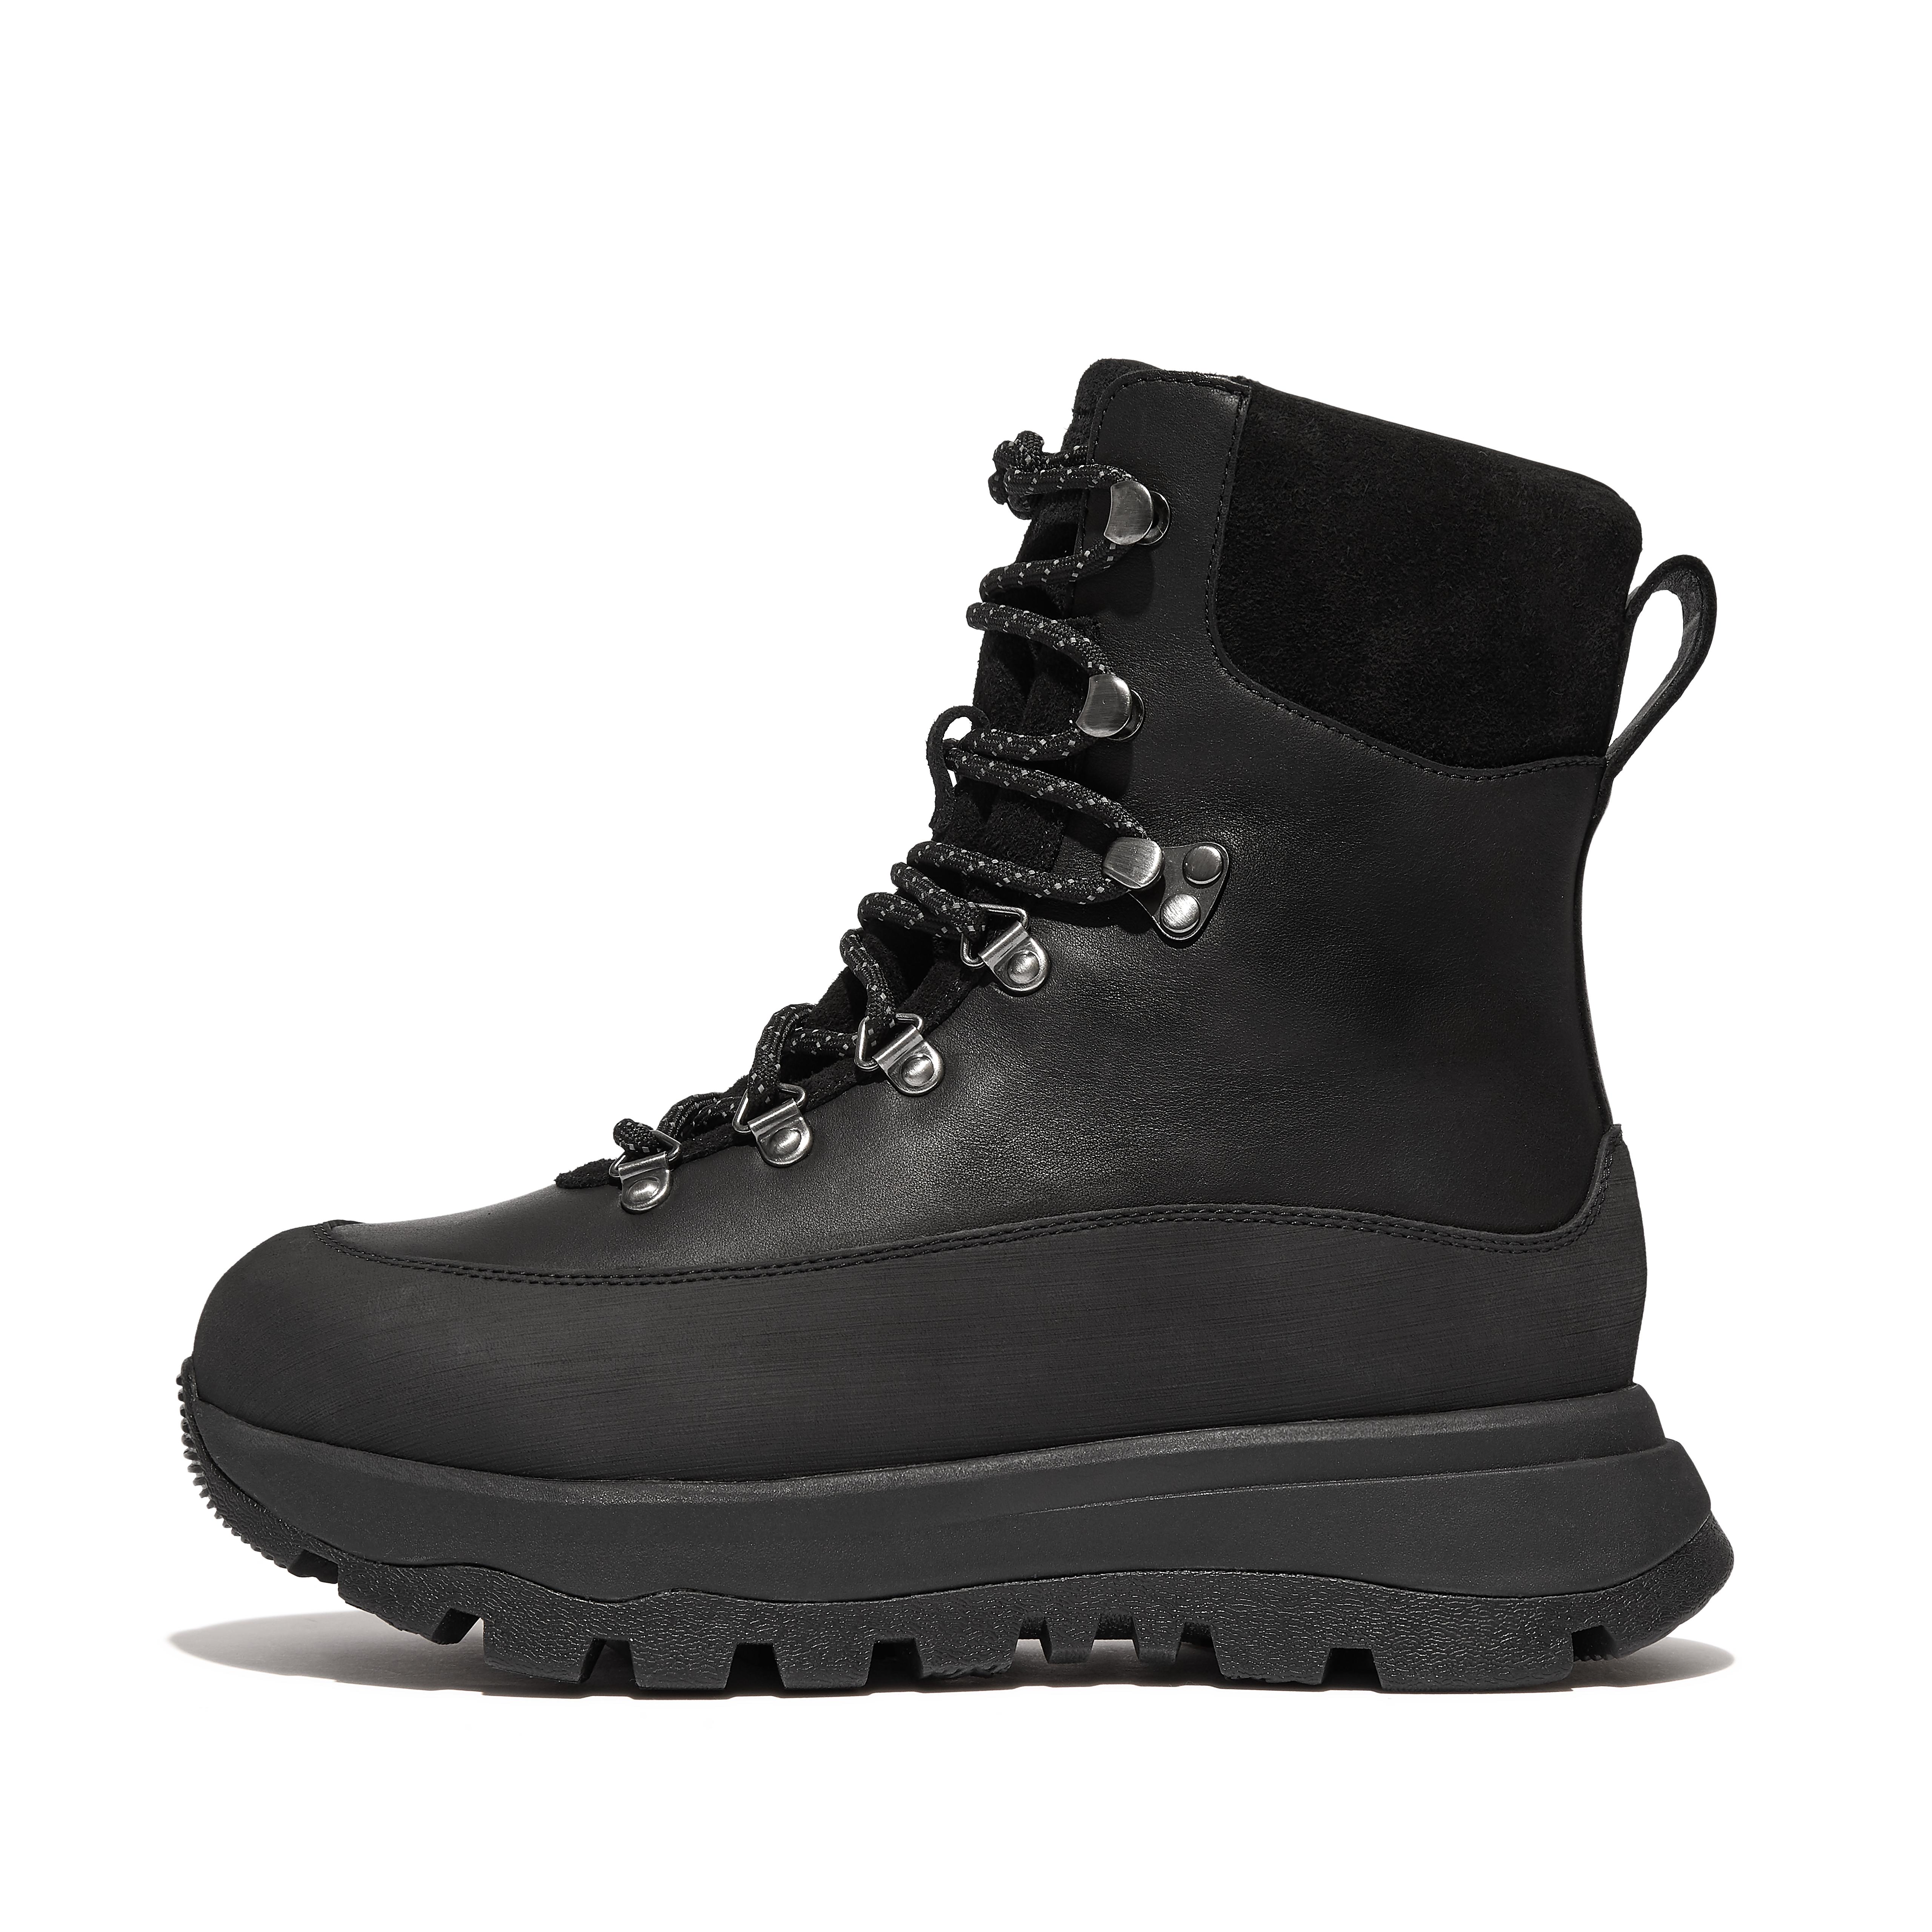 핏플랍 Fitflop Waterproof Leather/Suede Fleece-Lined Walking Boots,All Black